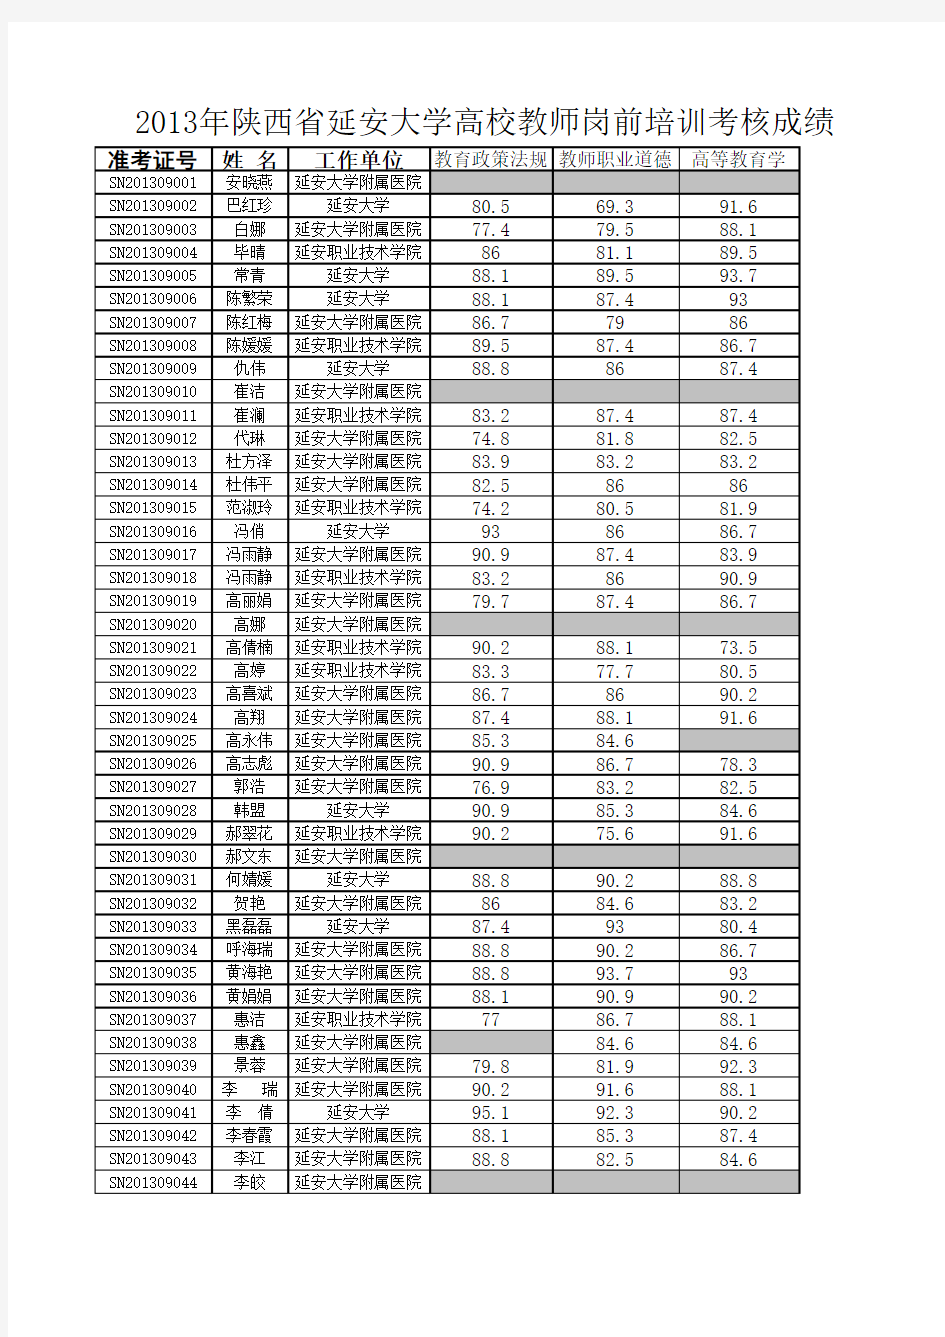 2013年陕西省延安大学高校教师岗前培训考核成绩单